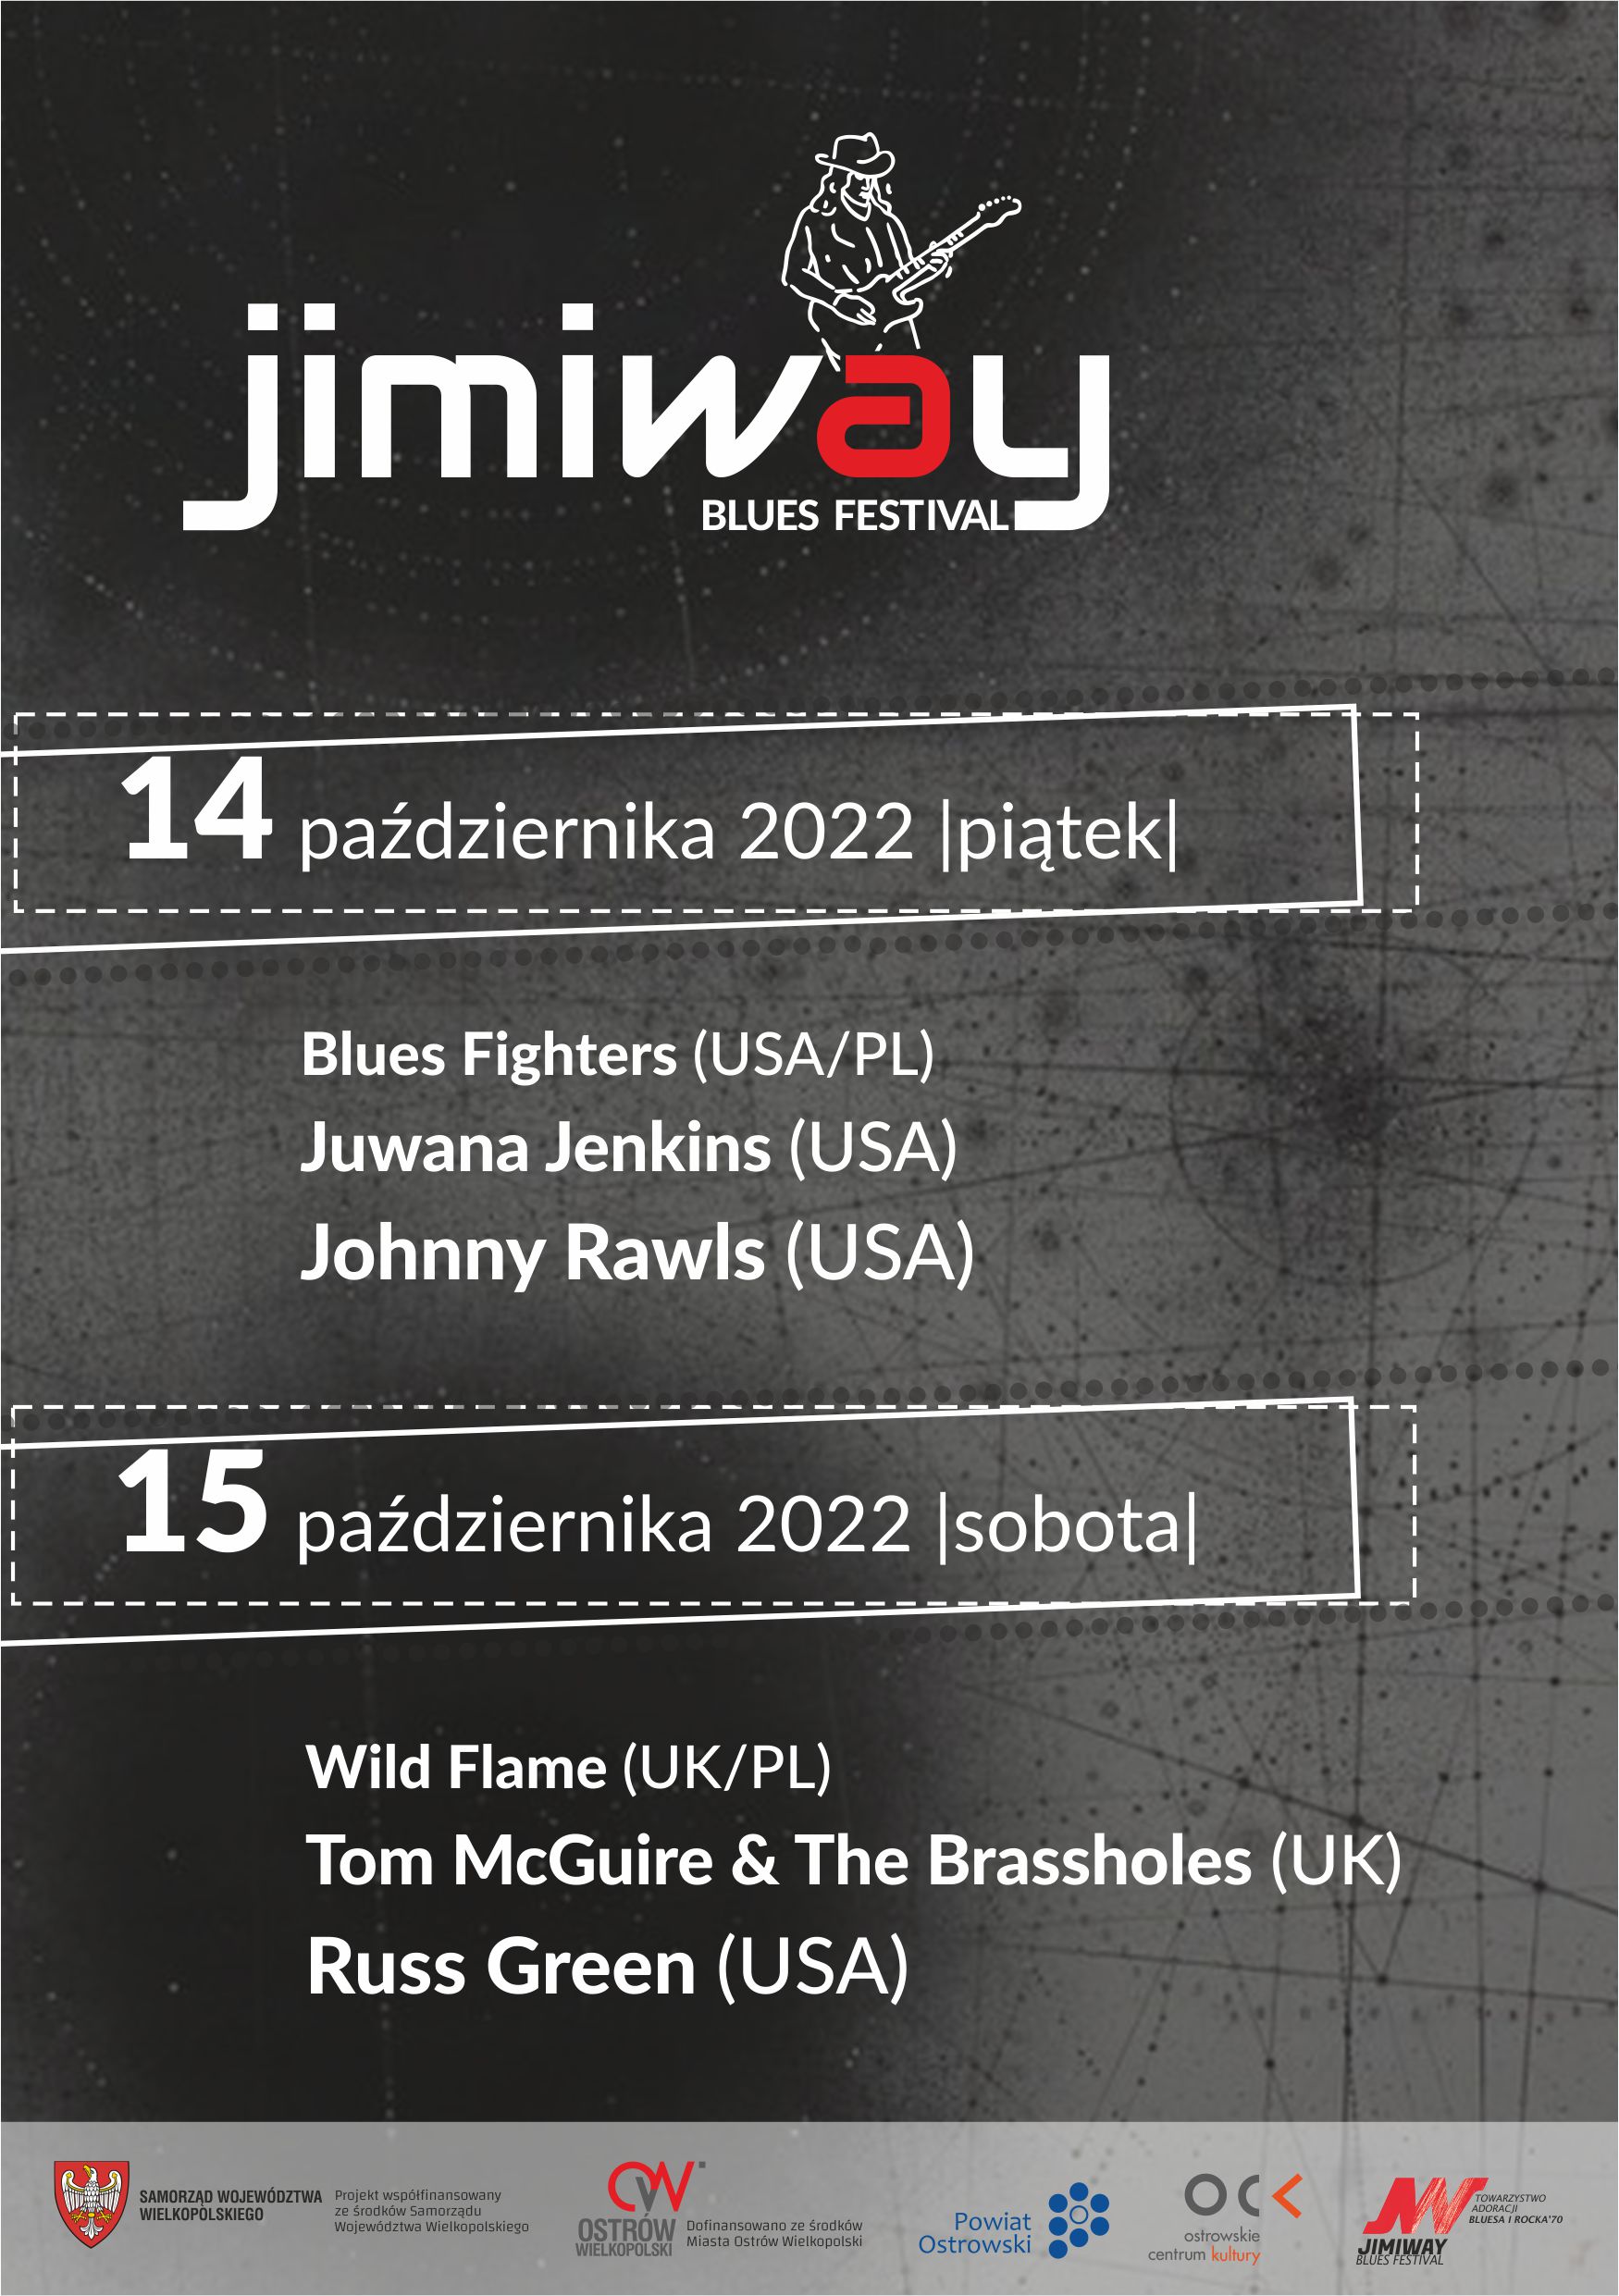 Jimiway Blues Festival 2022